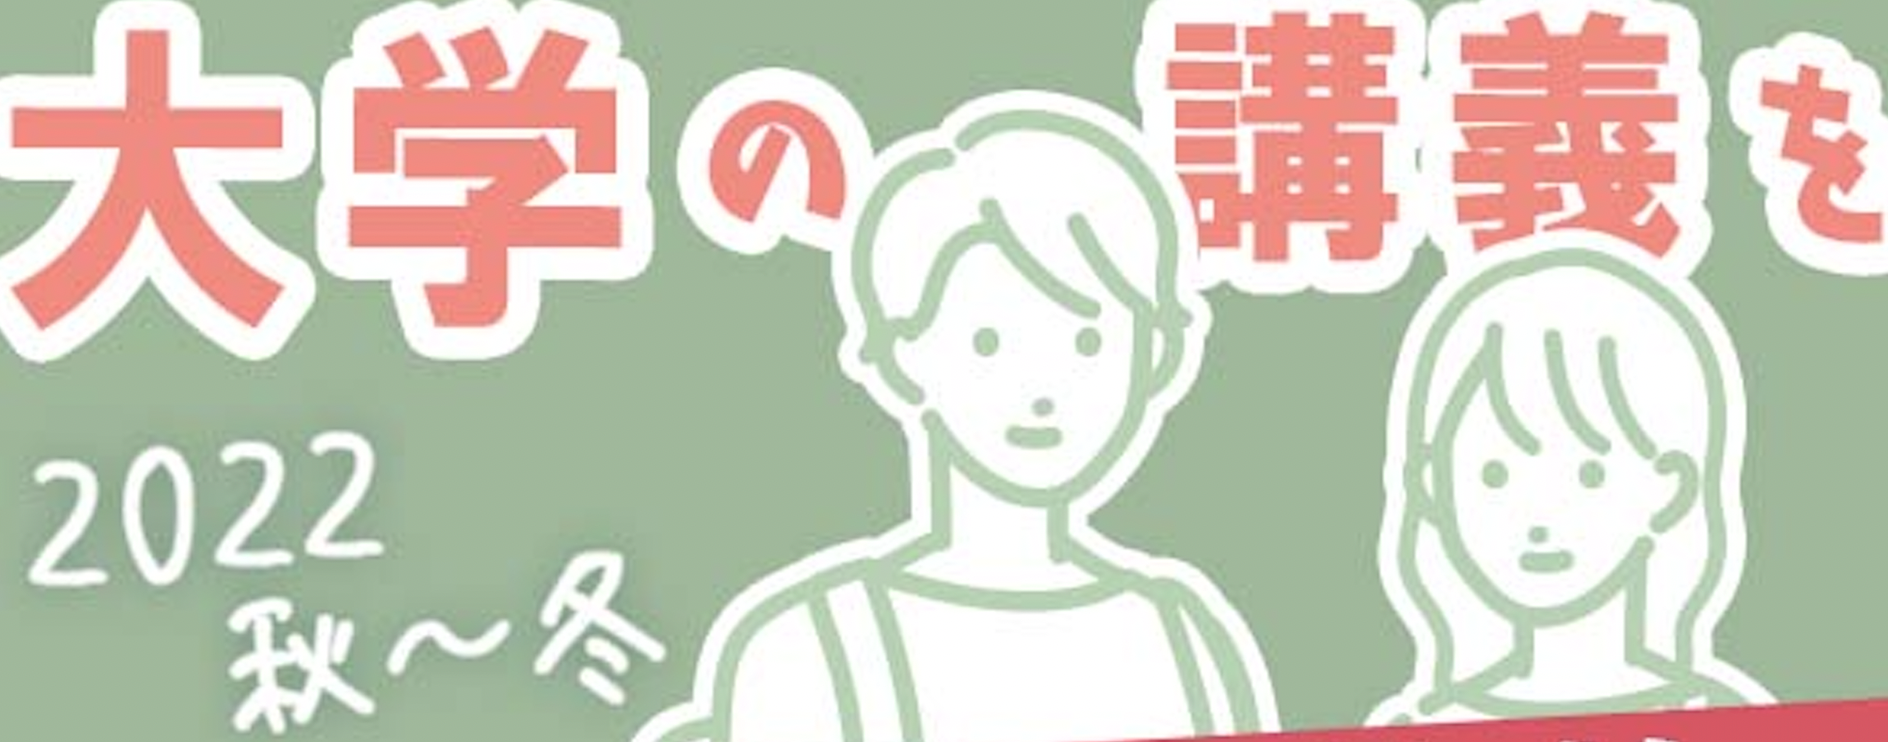 【高校生向け】経済学部 科目等履修生の募集